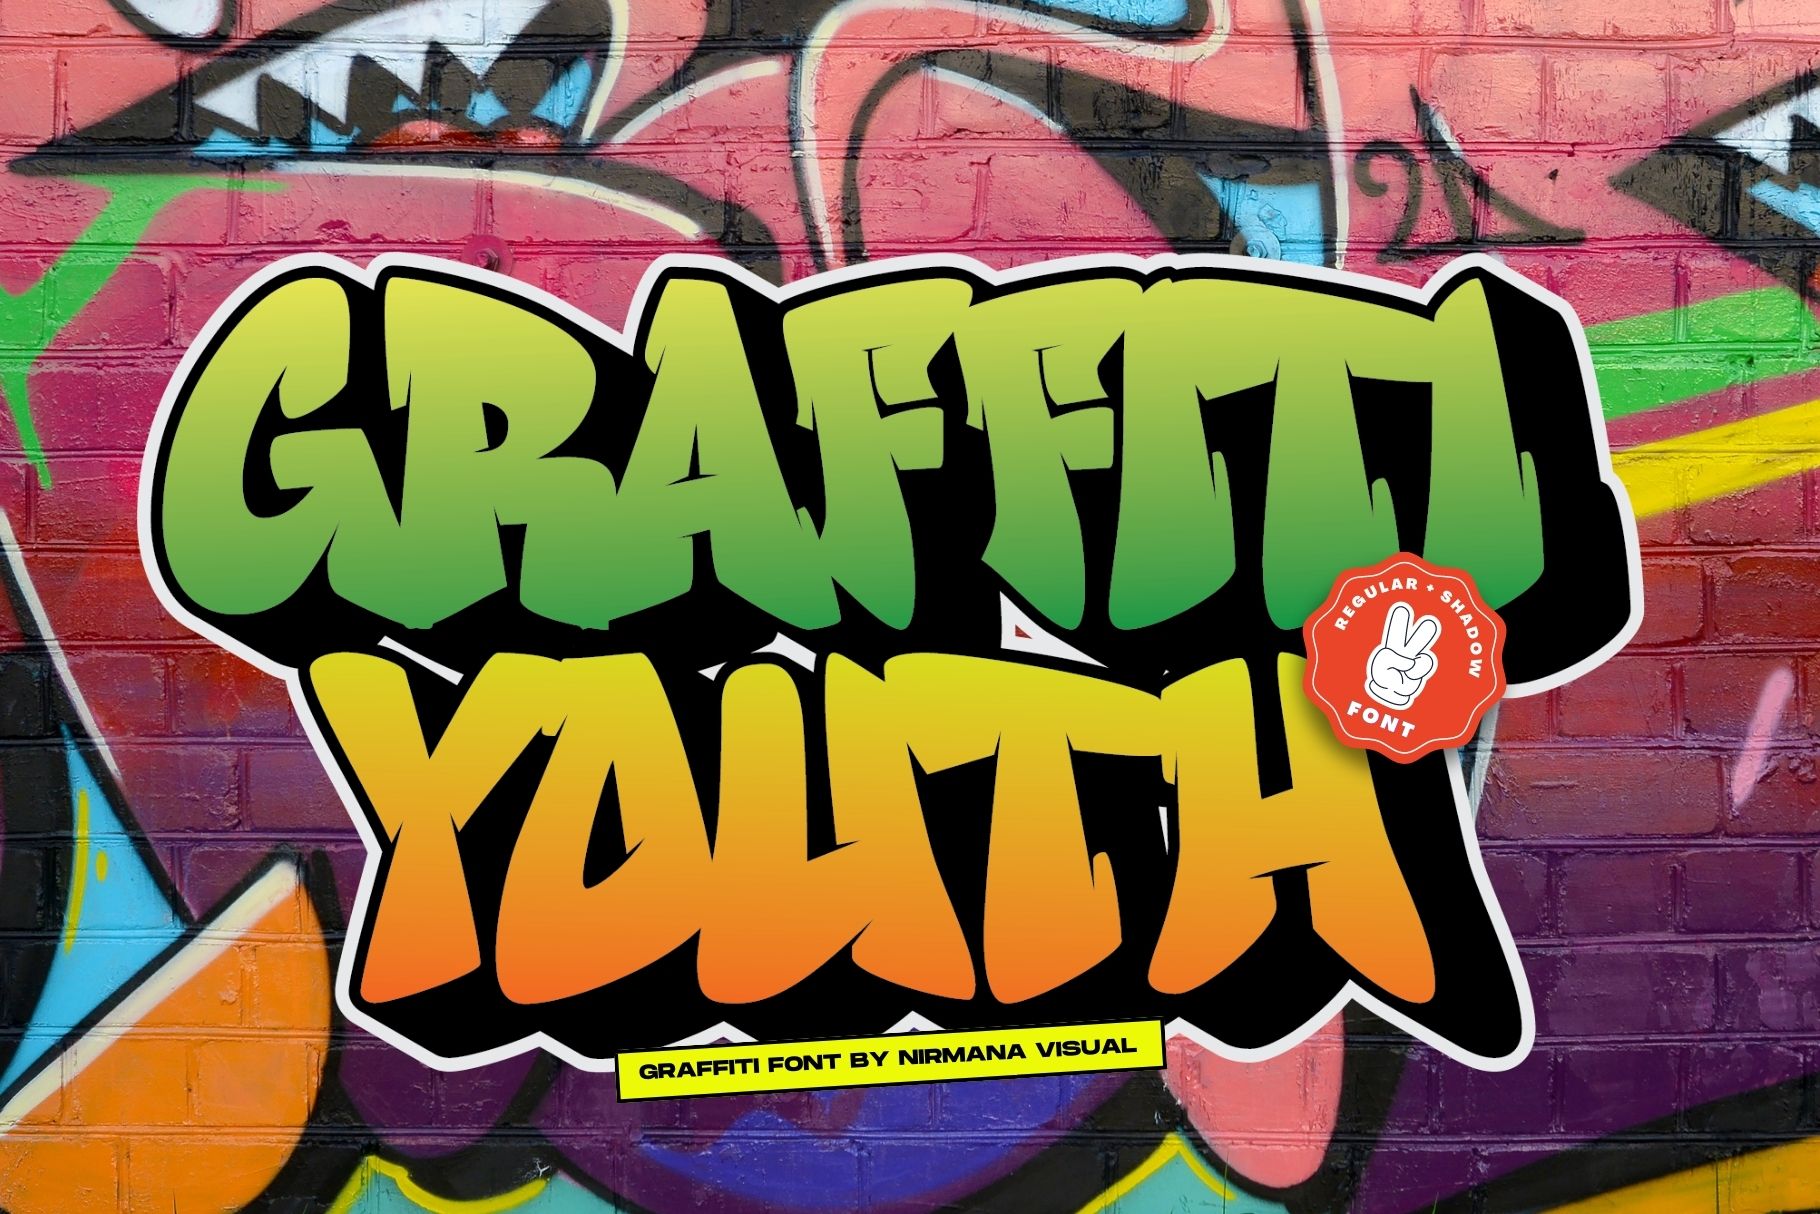 Graffiti Youth